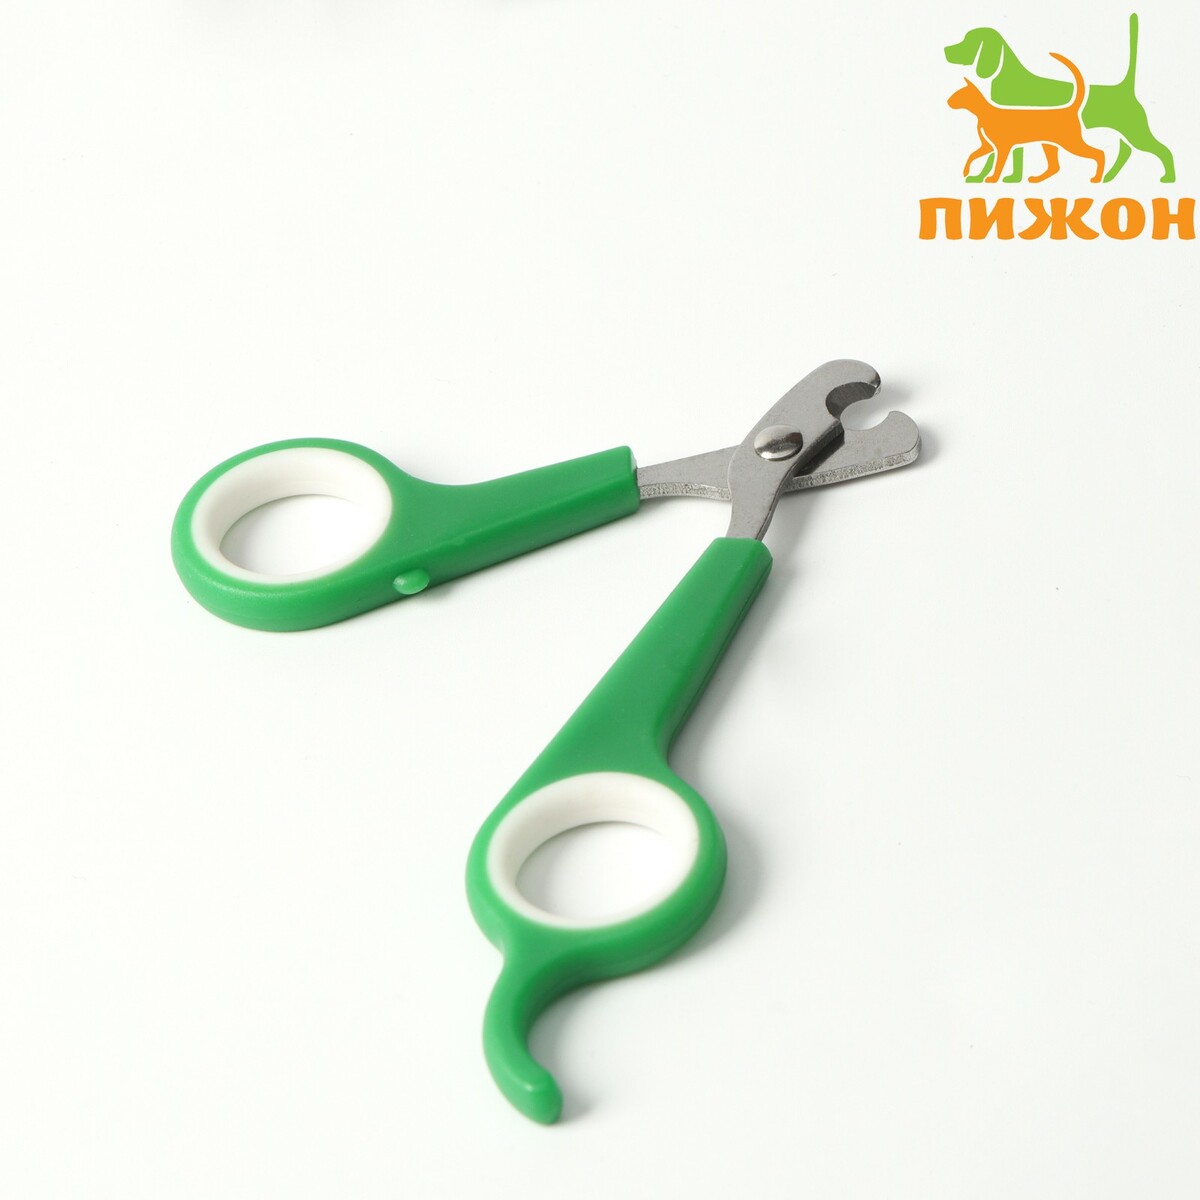 Ножницы-когтерезы с упором для пальца, отверстие 6 мм, зеленые с белым